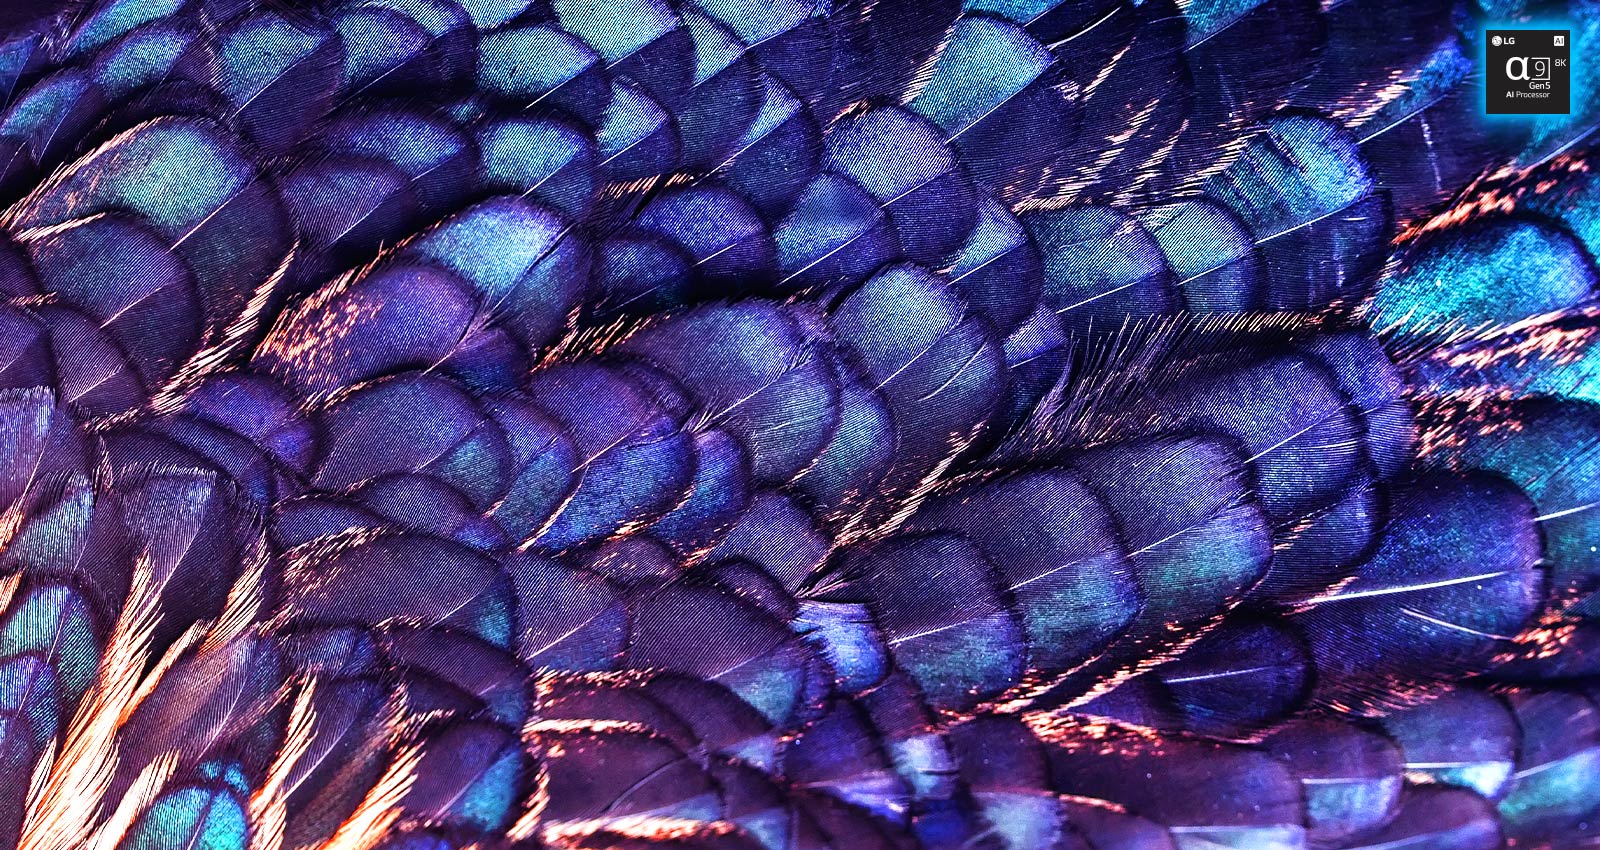 Hình ảnh có kết cấu lông óng ánh sáng của một con chim cổ tích màu hoa cà. Hình ảnh được chia thành hai - phần bên trên là hình ảnh sống động hơn và có dòng chữ AI 8K Upscaling cùng với hình ảnh chip xử lý và phần bên dưới trông nhợt nhạt hơn.